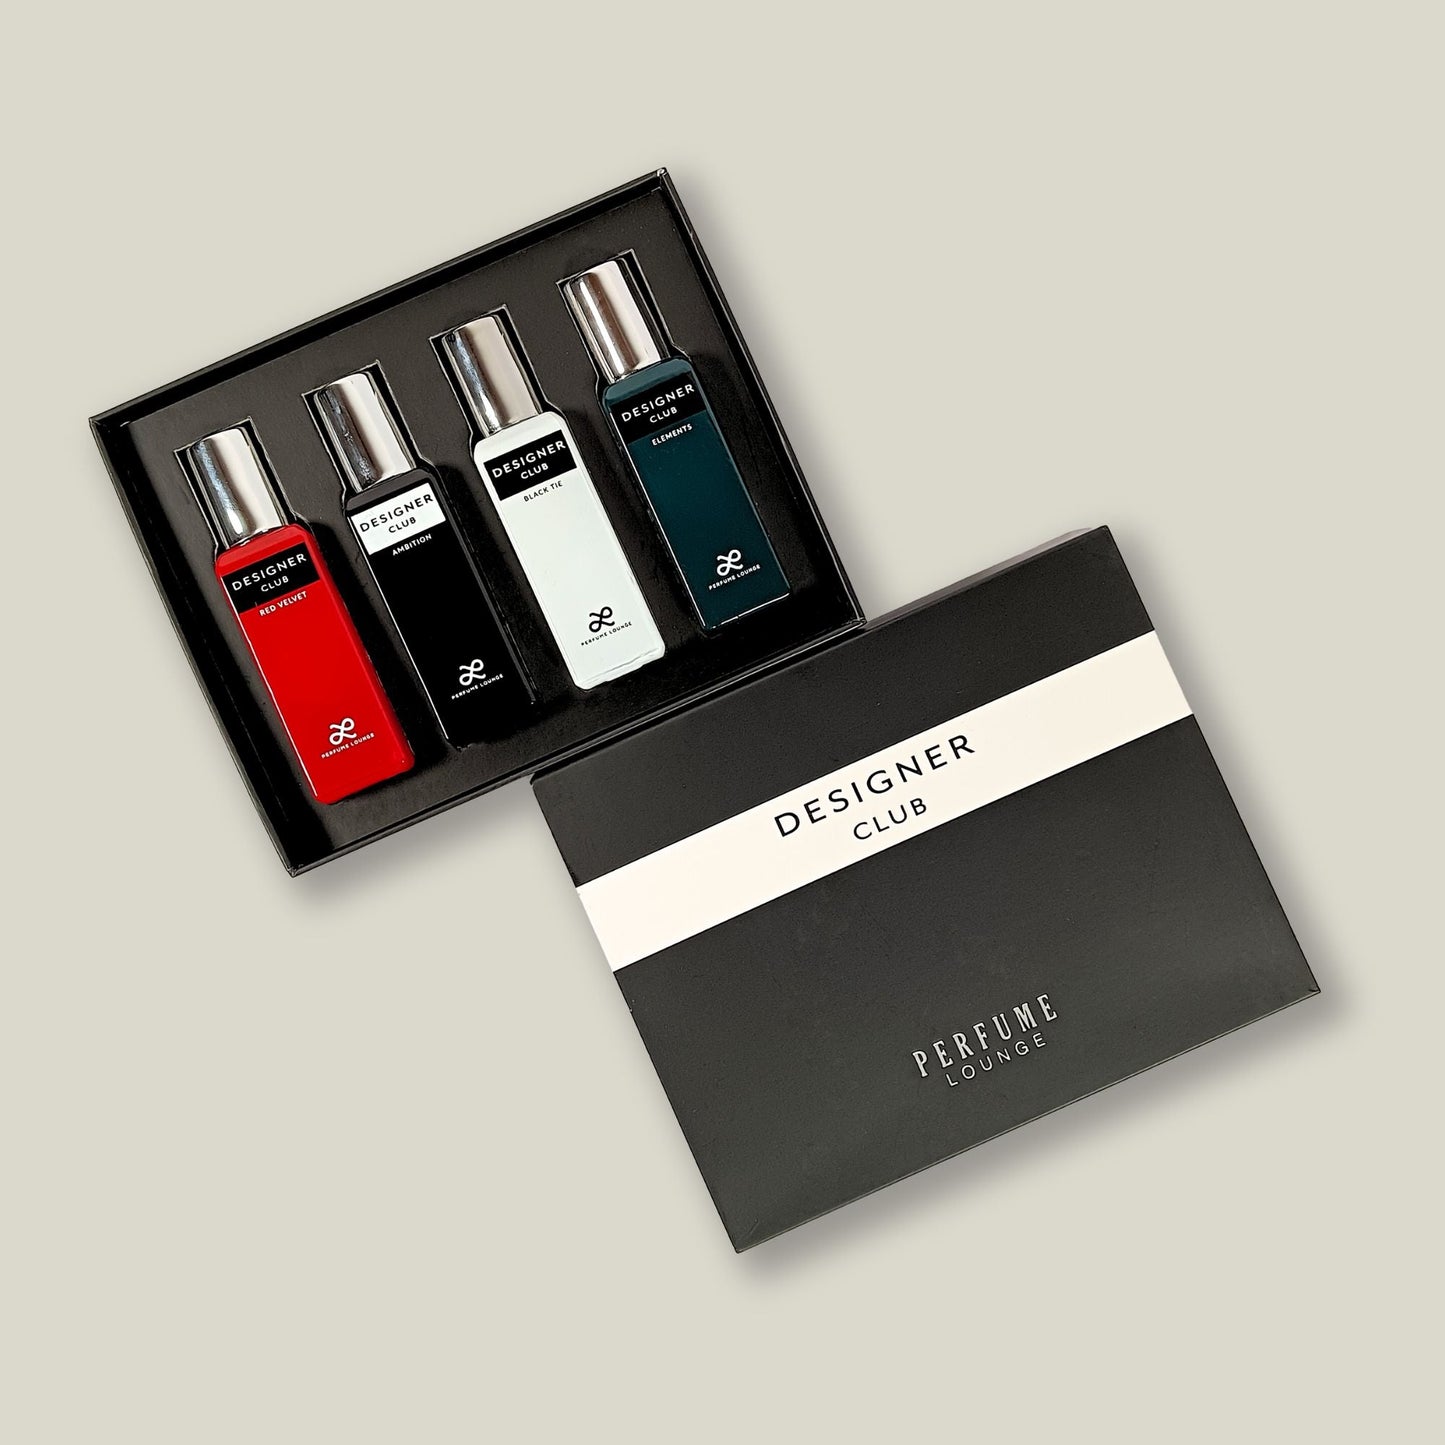 Designer Club Perfume Gift Set of 4 Perfumes (20 ml Each) - 80ml